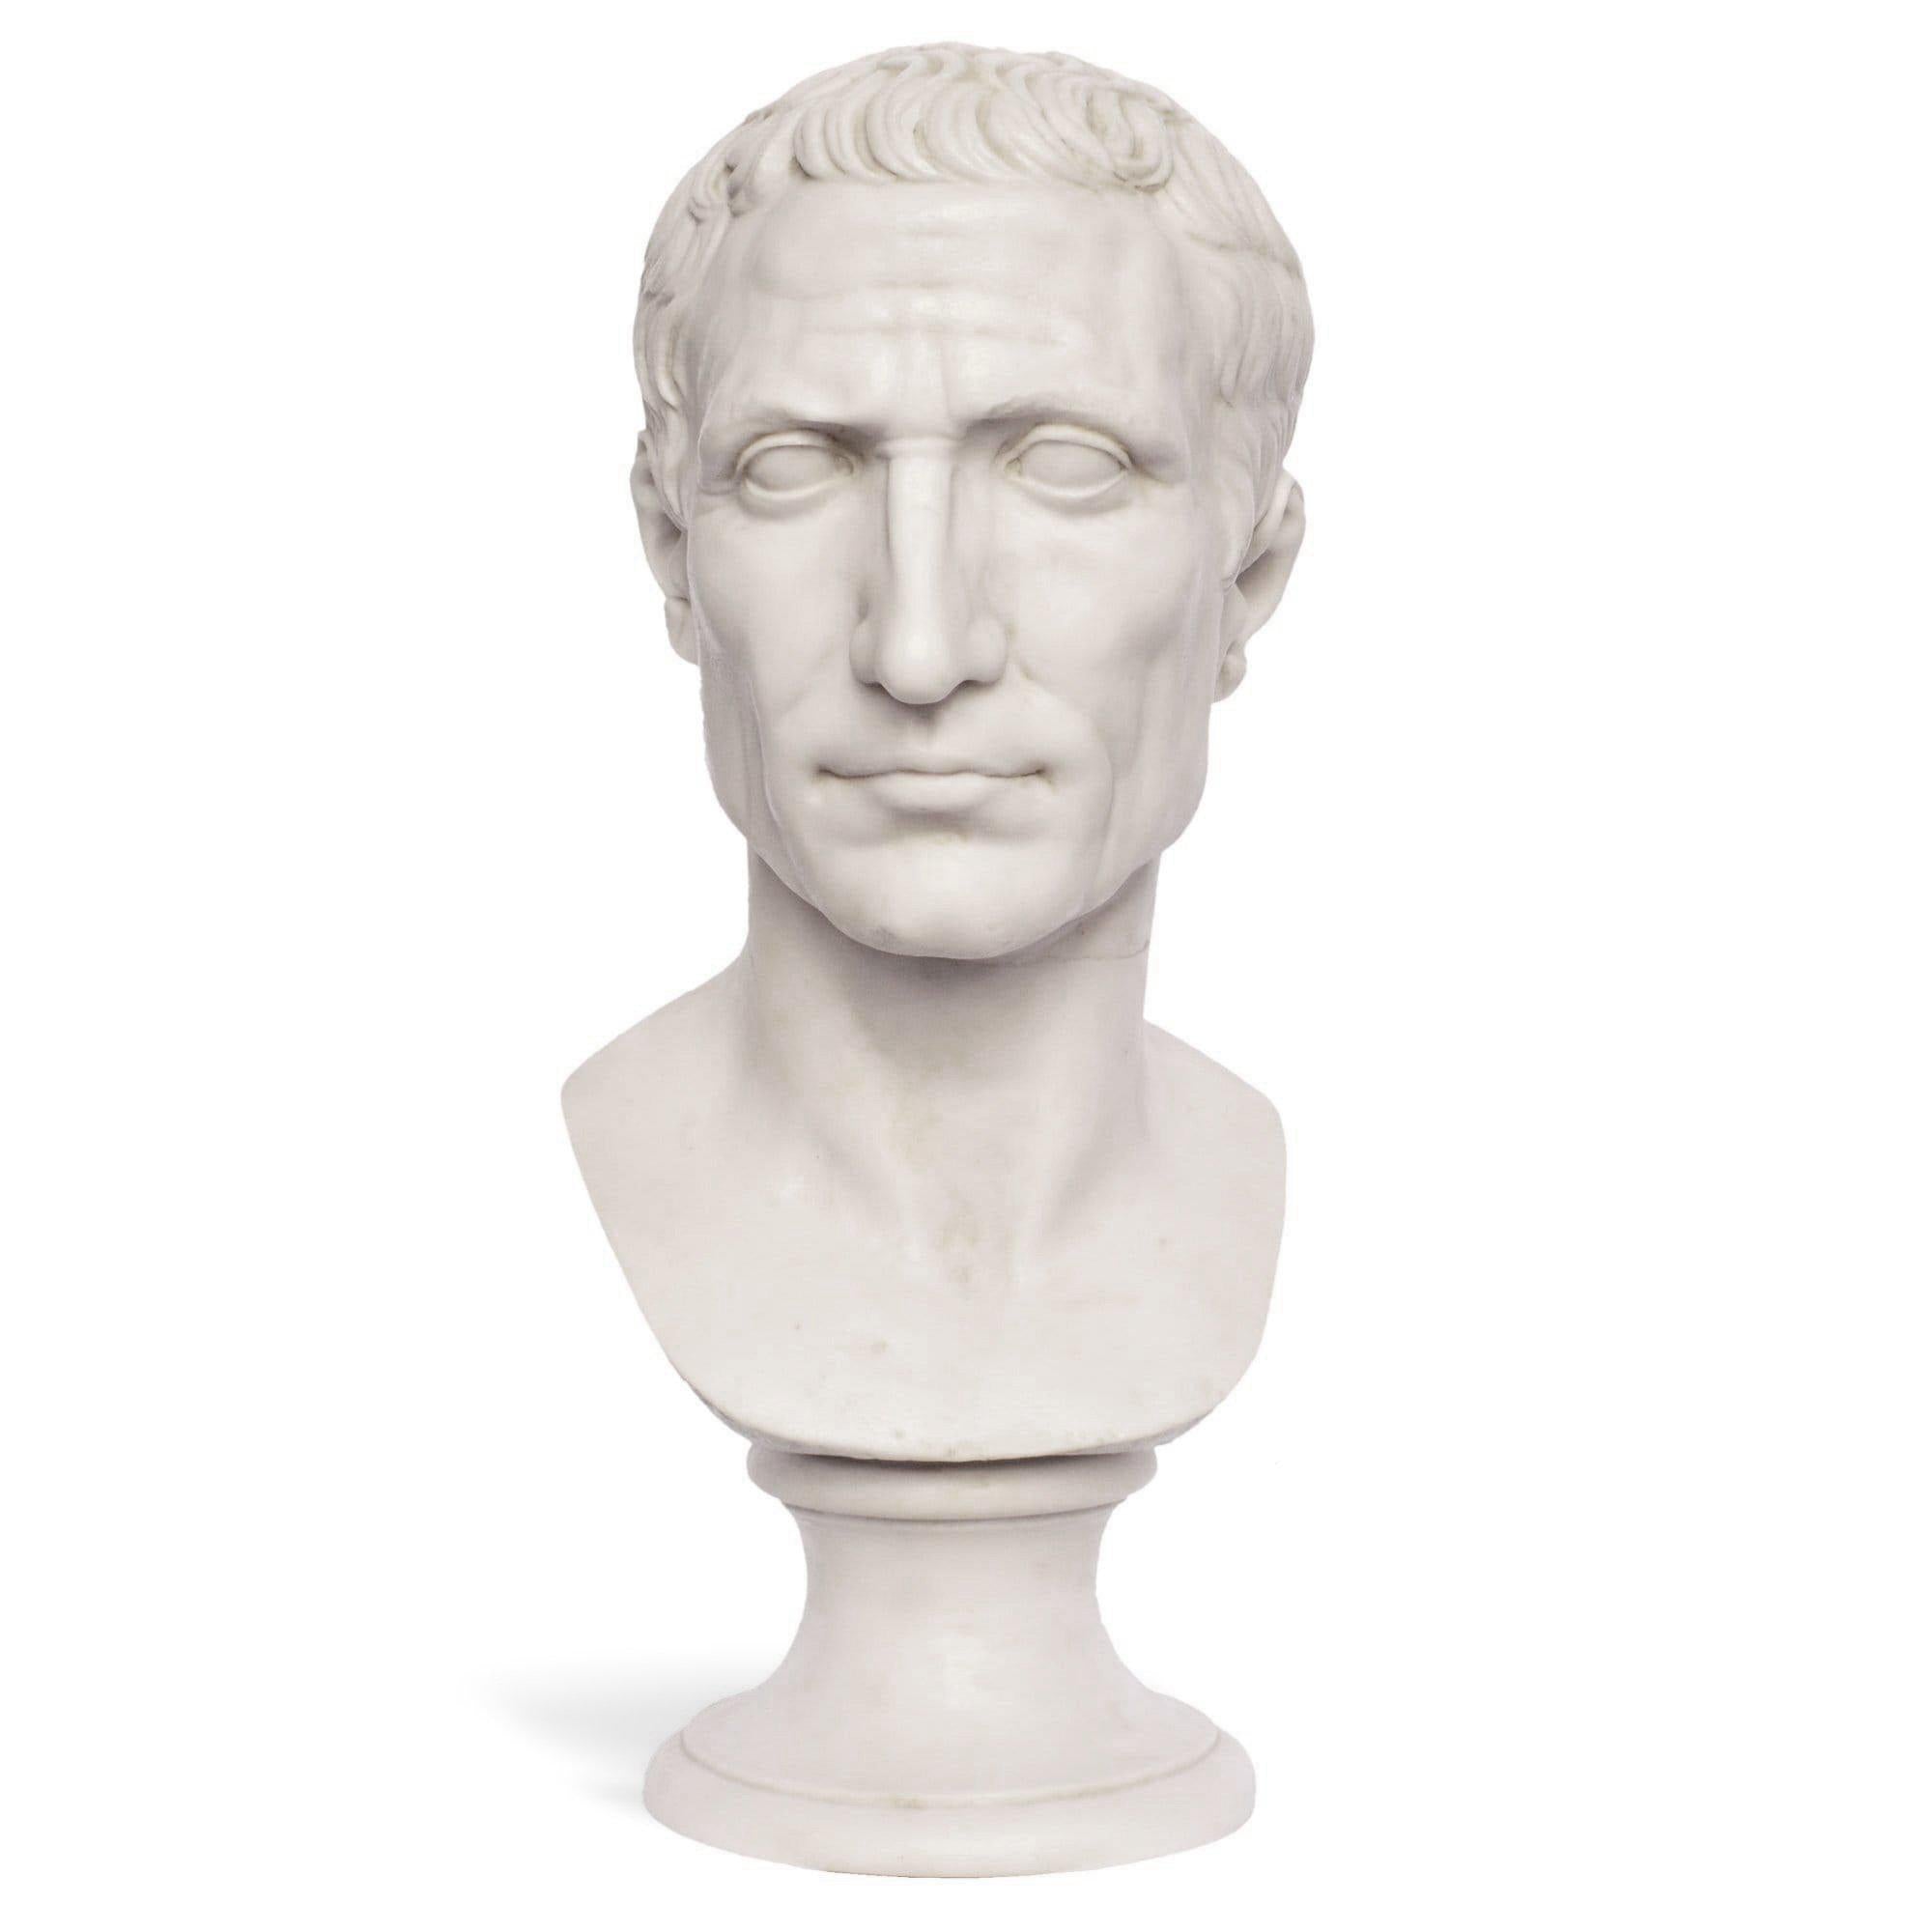 Italy　Museum　in　busto　Cesare　–　Shop　Giulio　marmo